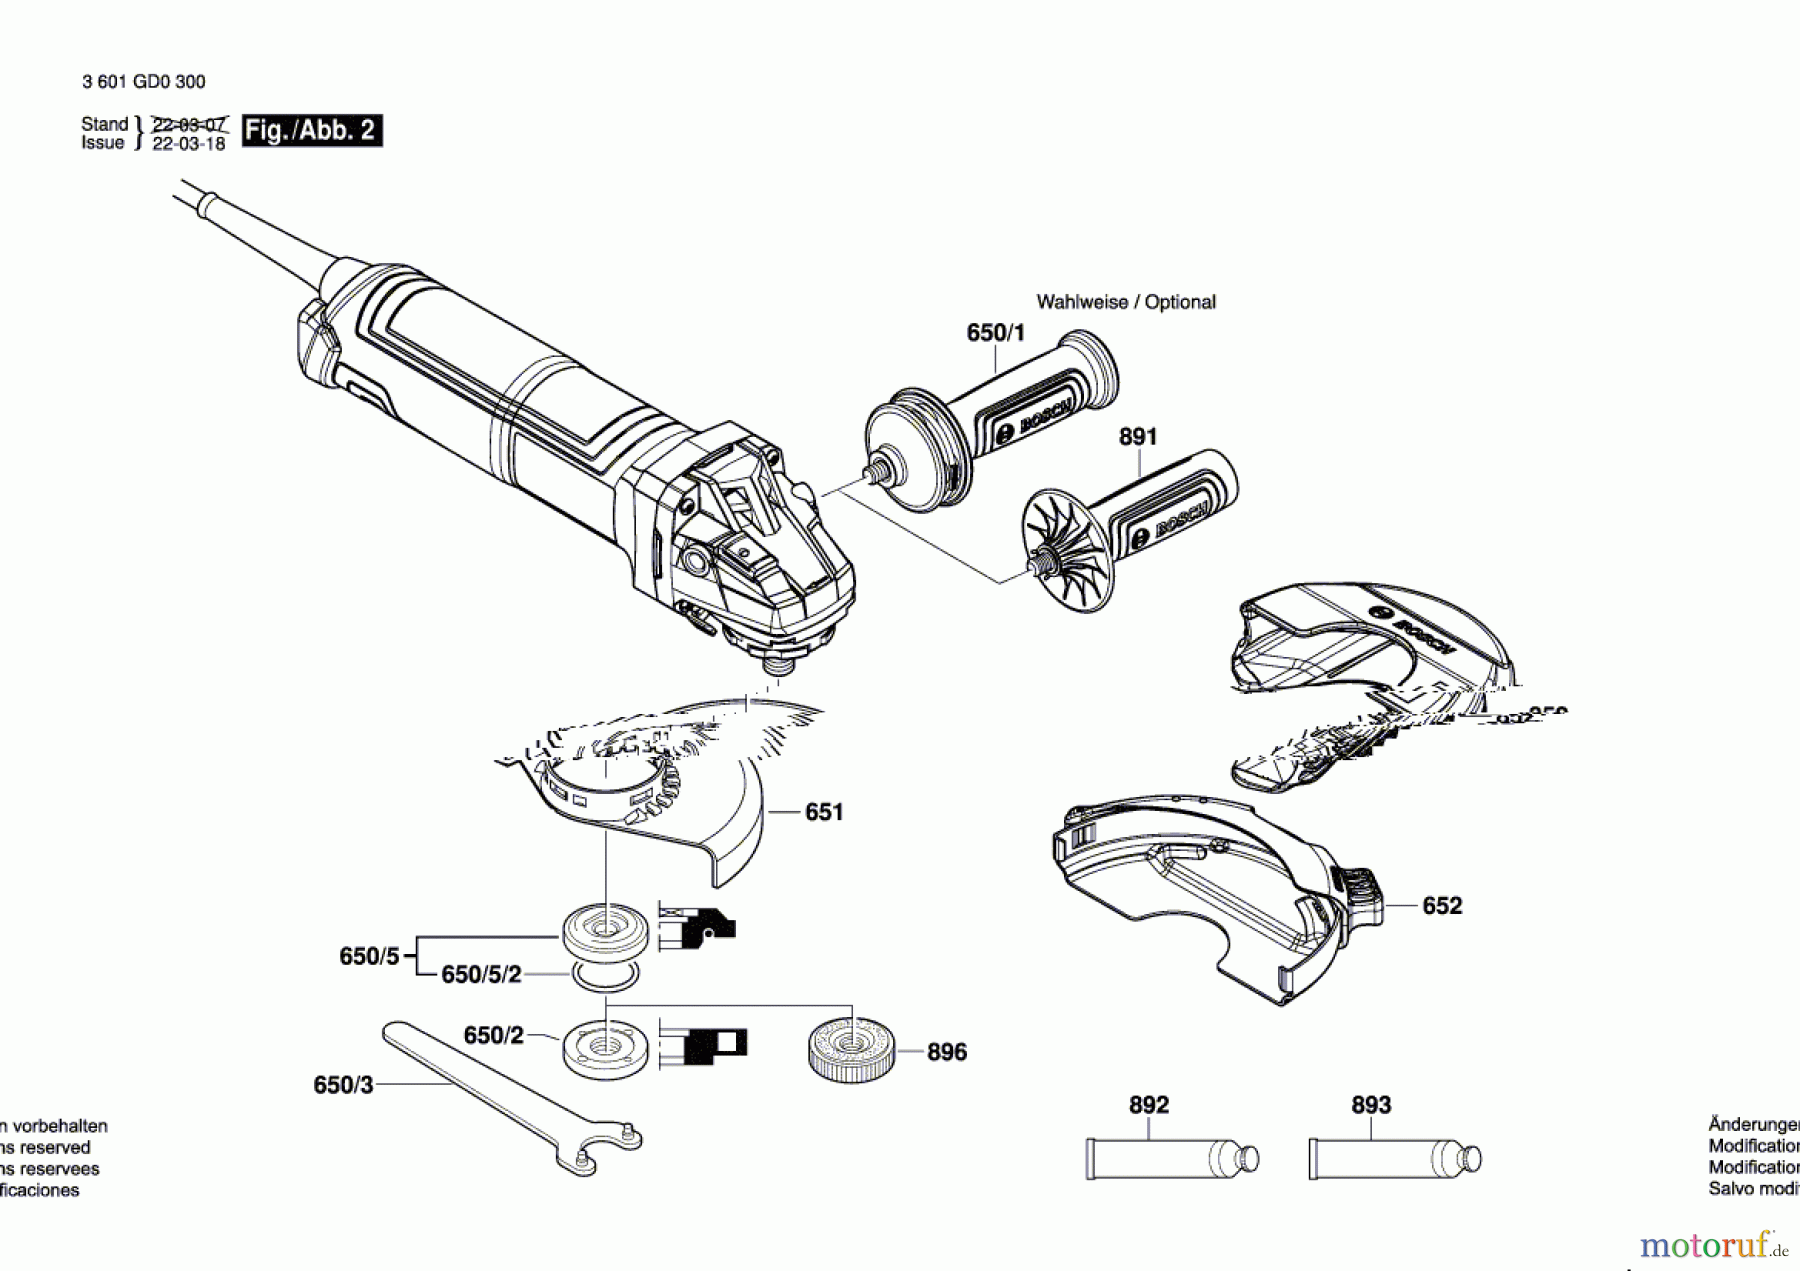  Bosch Werkzeug Winkelschleifer GWS 17-125 TS Seite 2